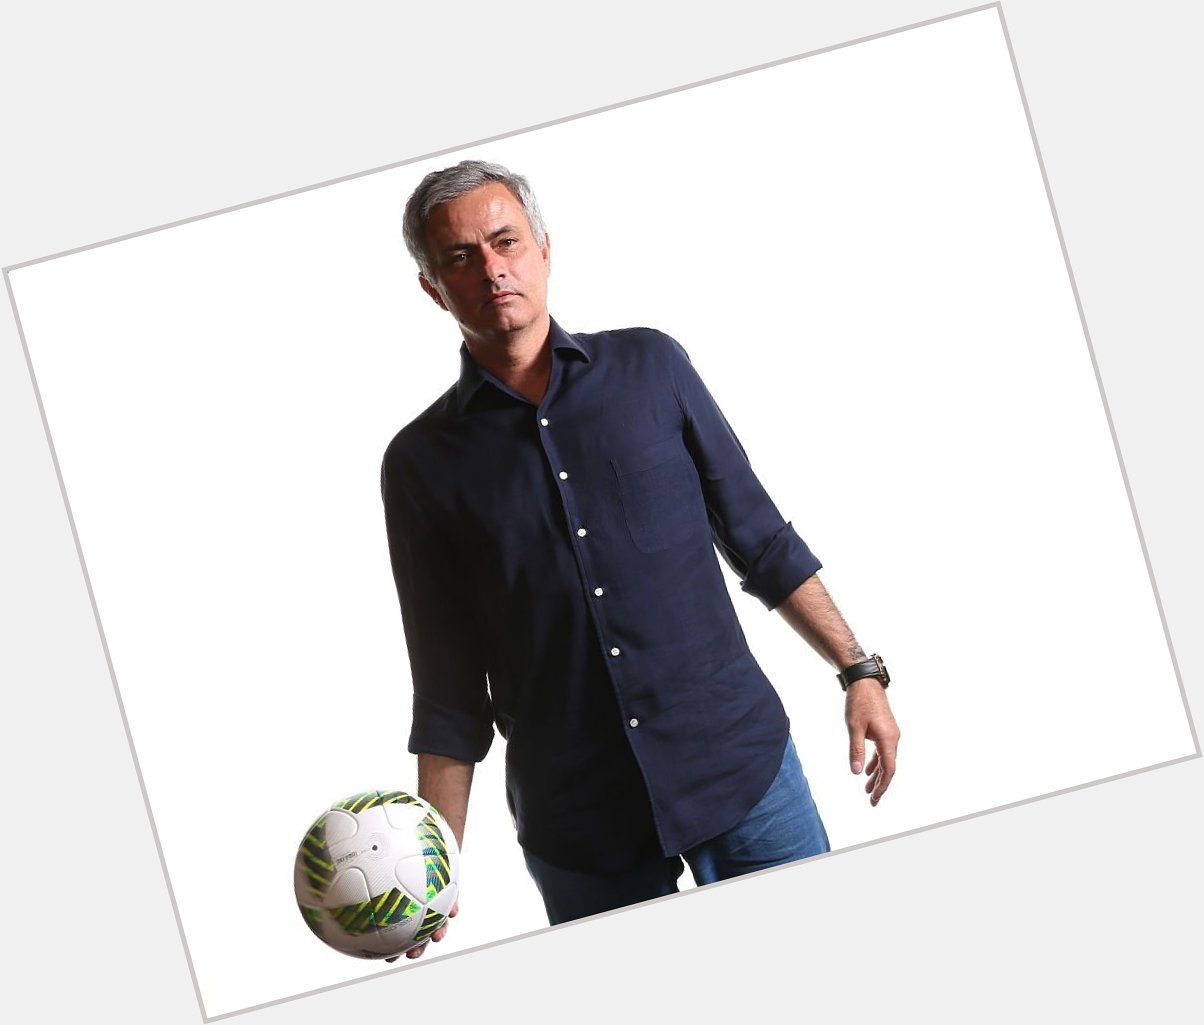 Happy birthday Jose Mourinho MY FOREVER GOAT. 